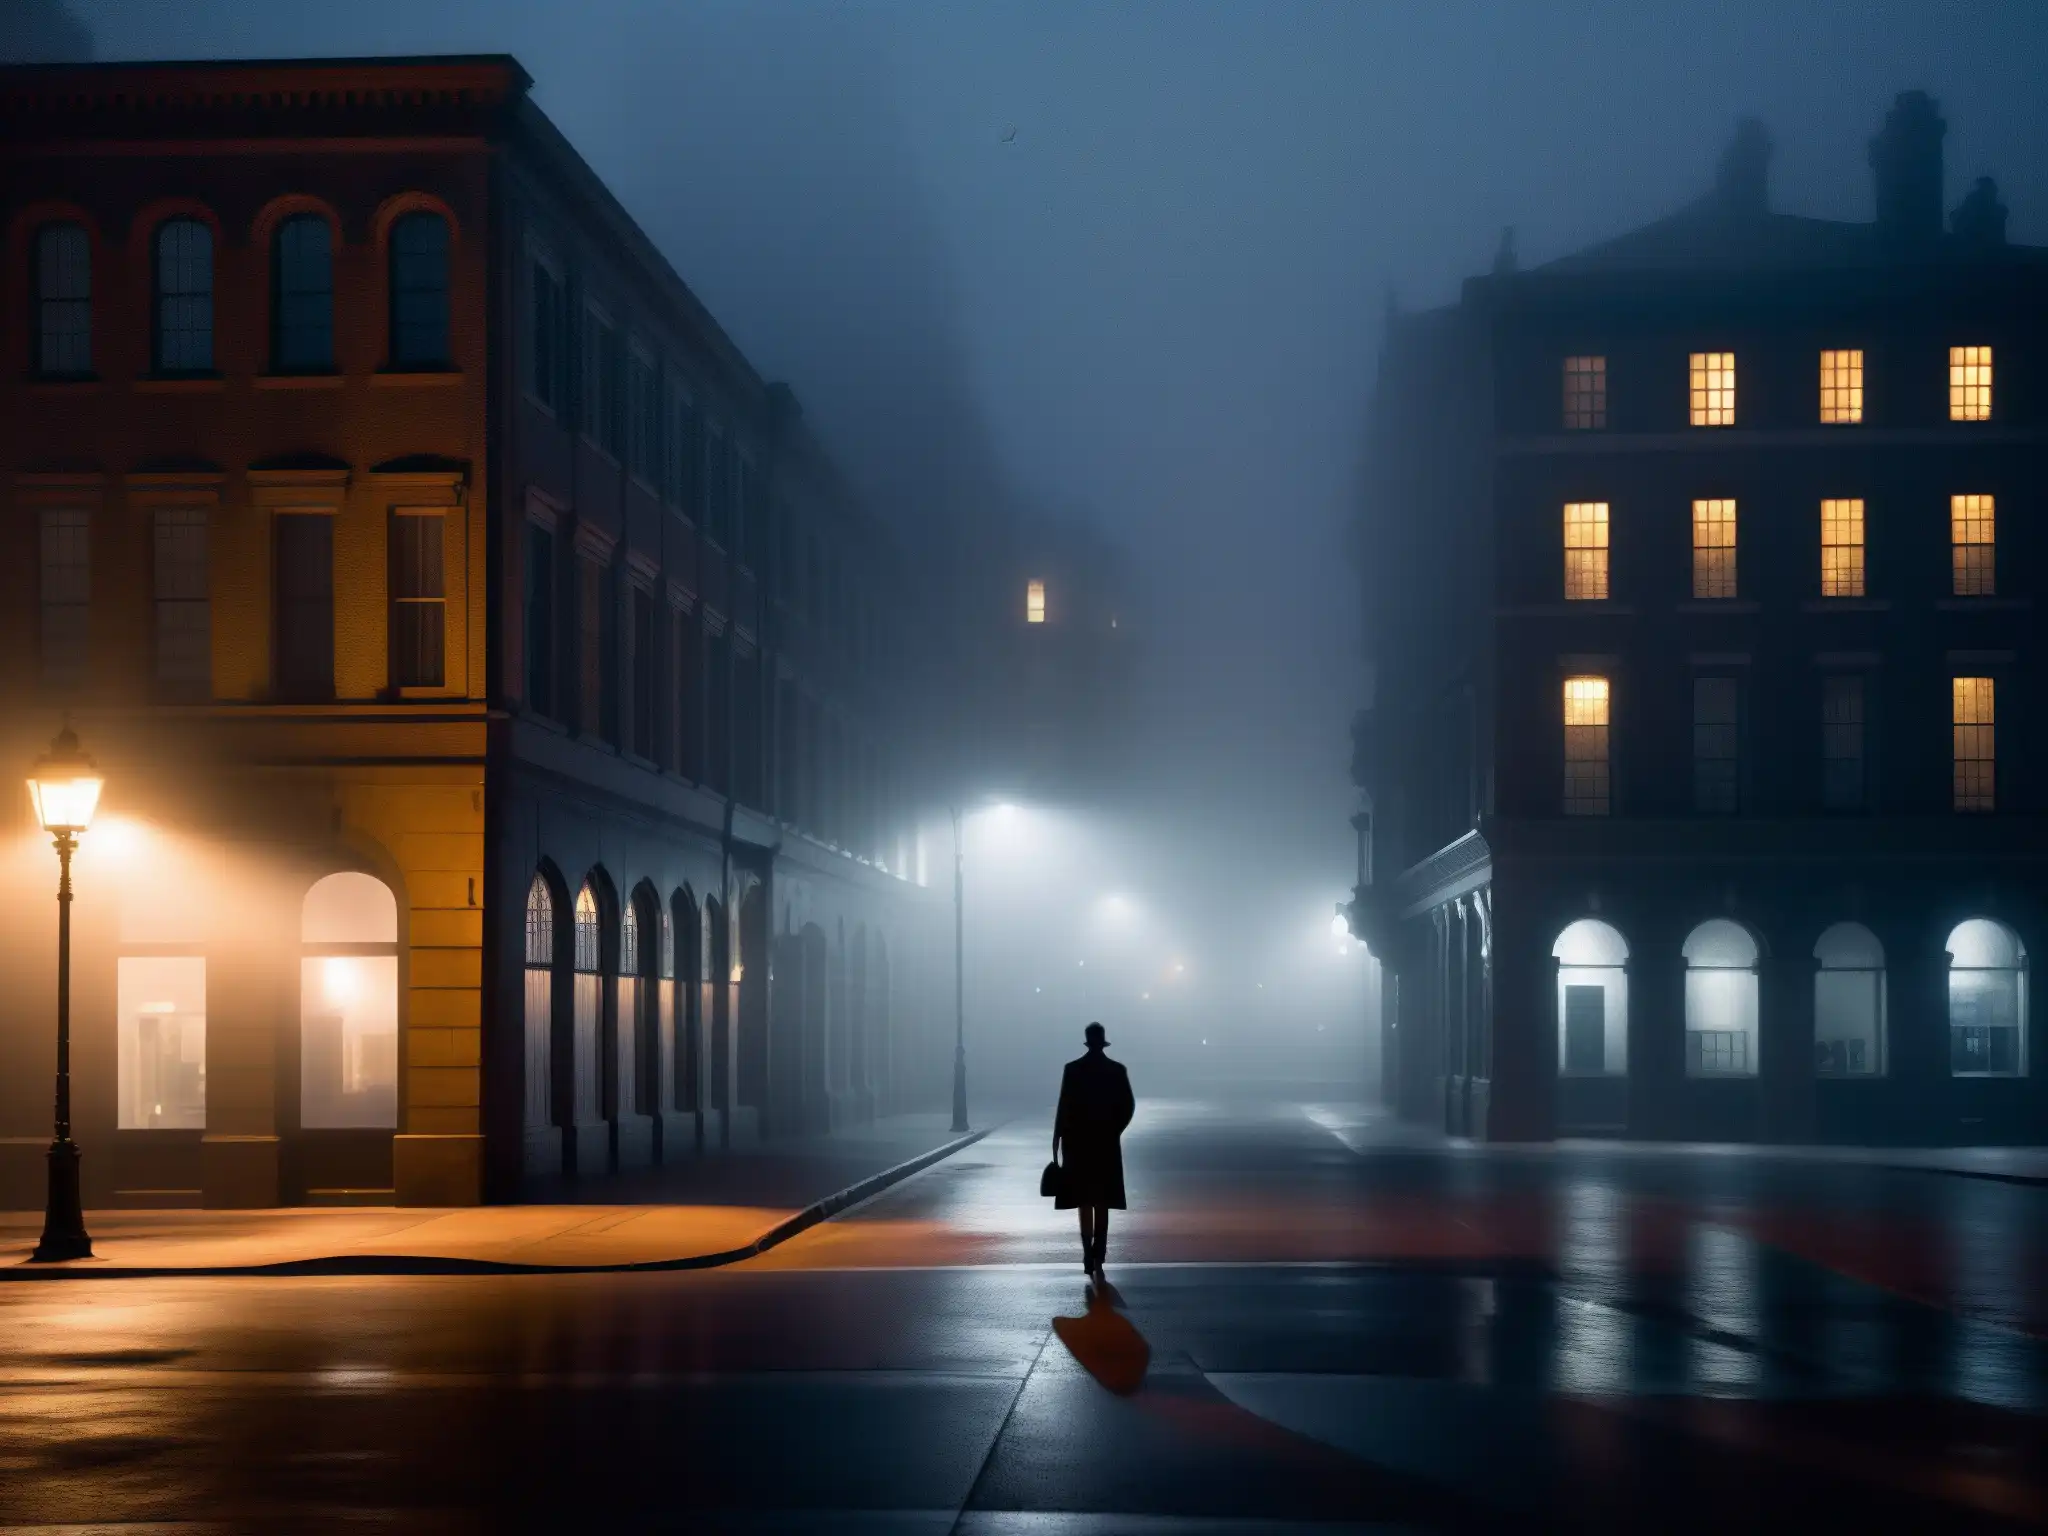 Una misteriosa calle urbana iluminada de noche con figuras en la distancia, evocando supersticiones en la era científica